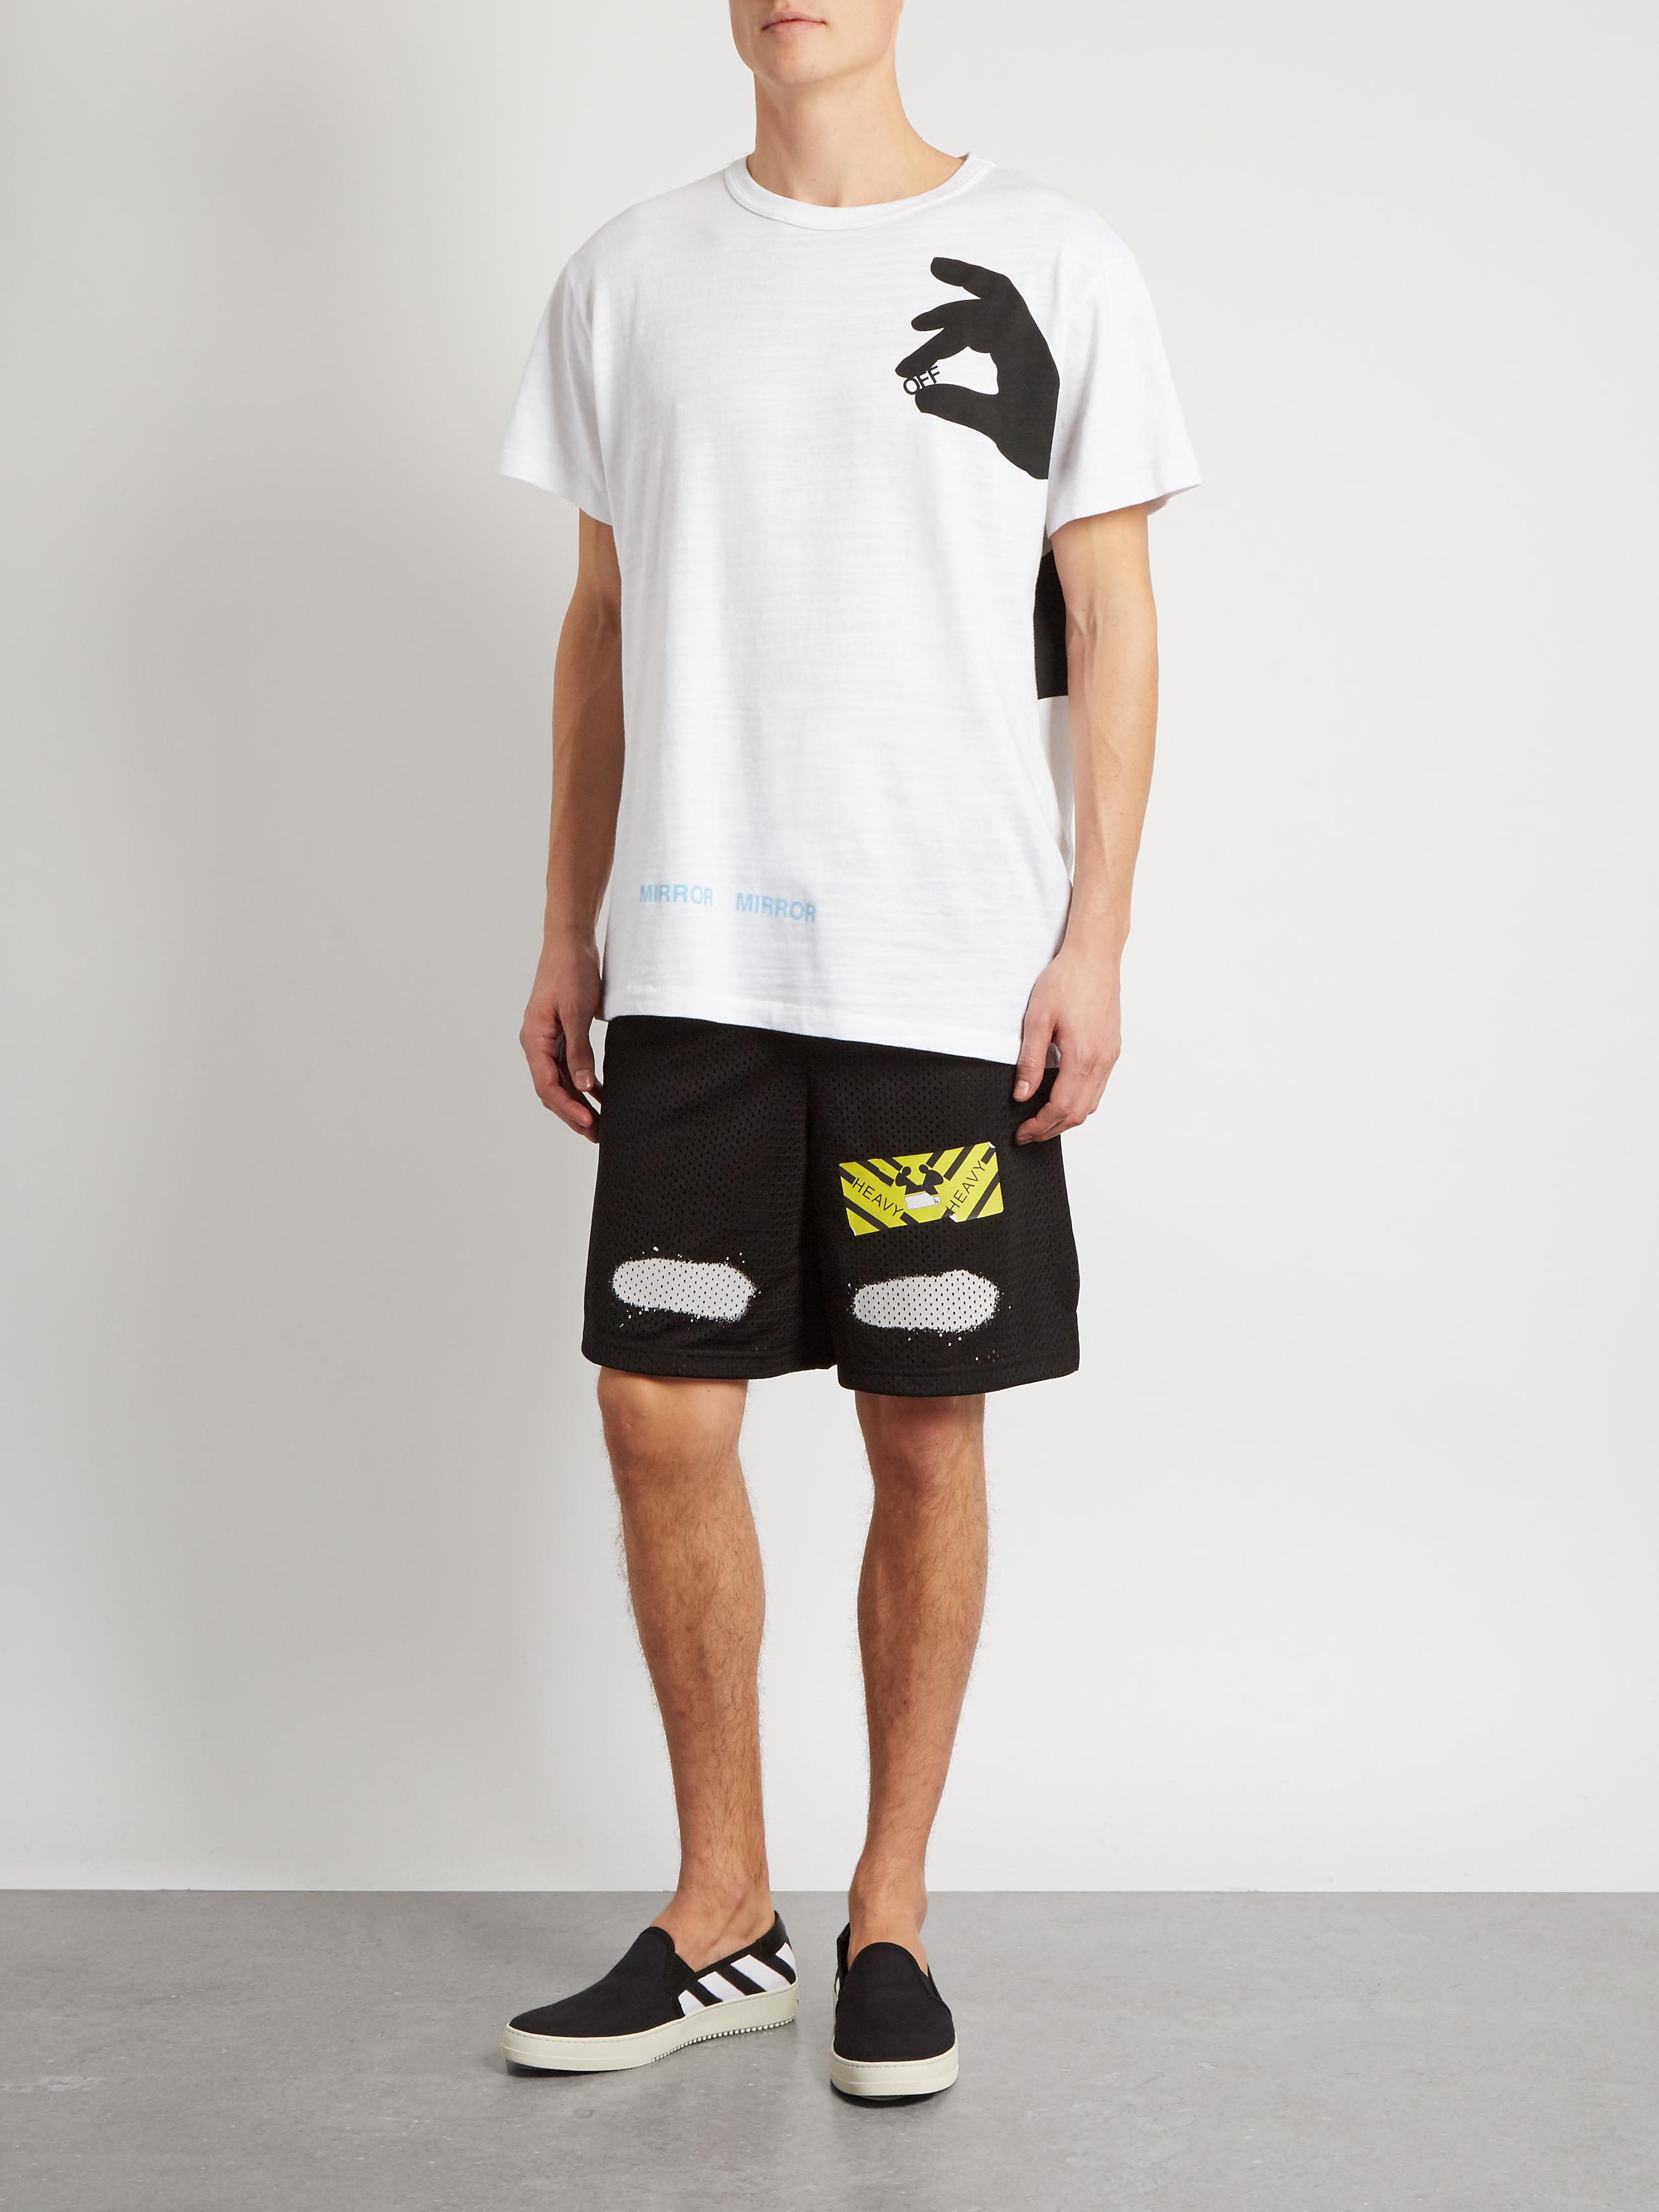 Lyst - Off-White C/O Virgil Abloh Spray-paint Mesh Shorts in Black for Men